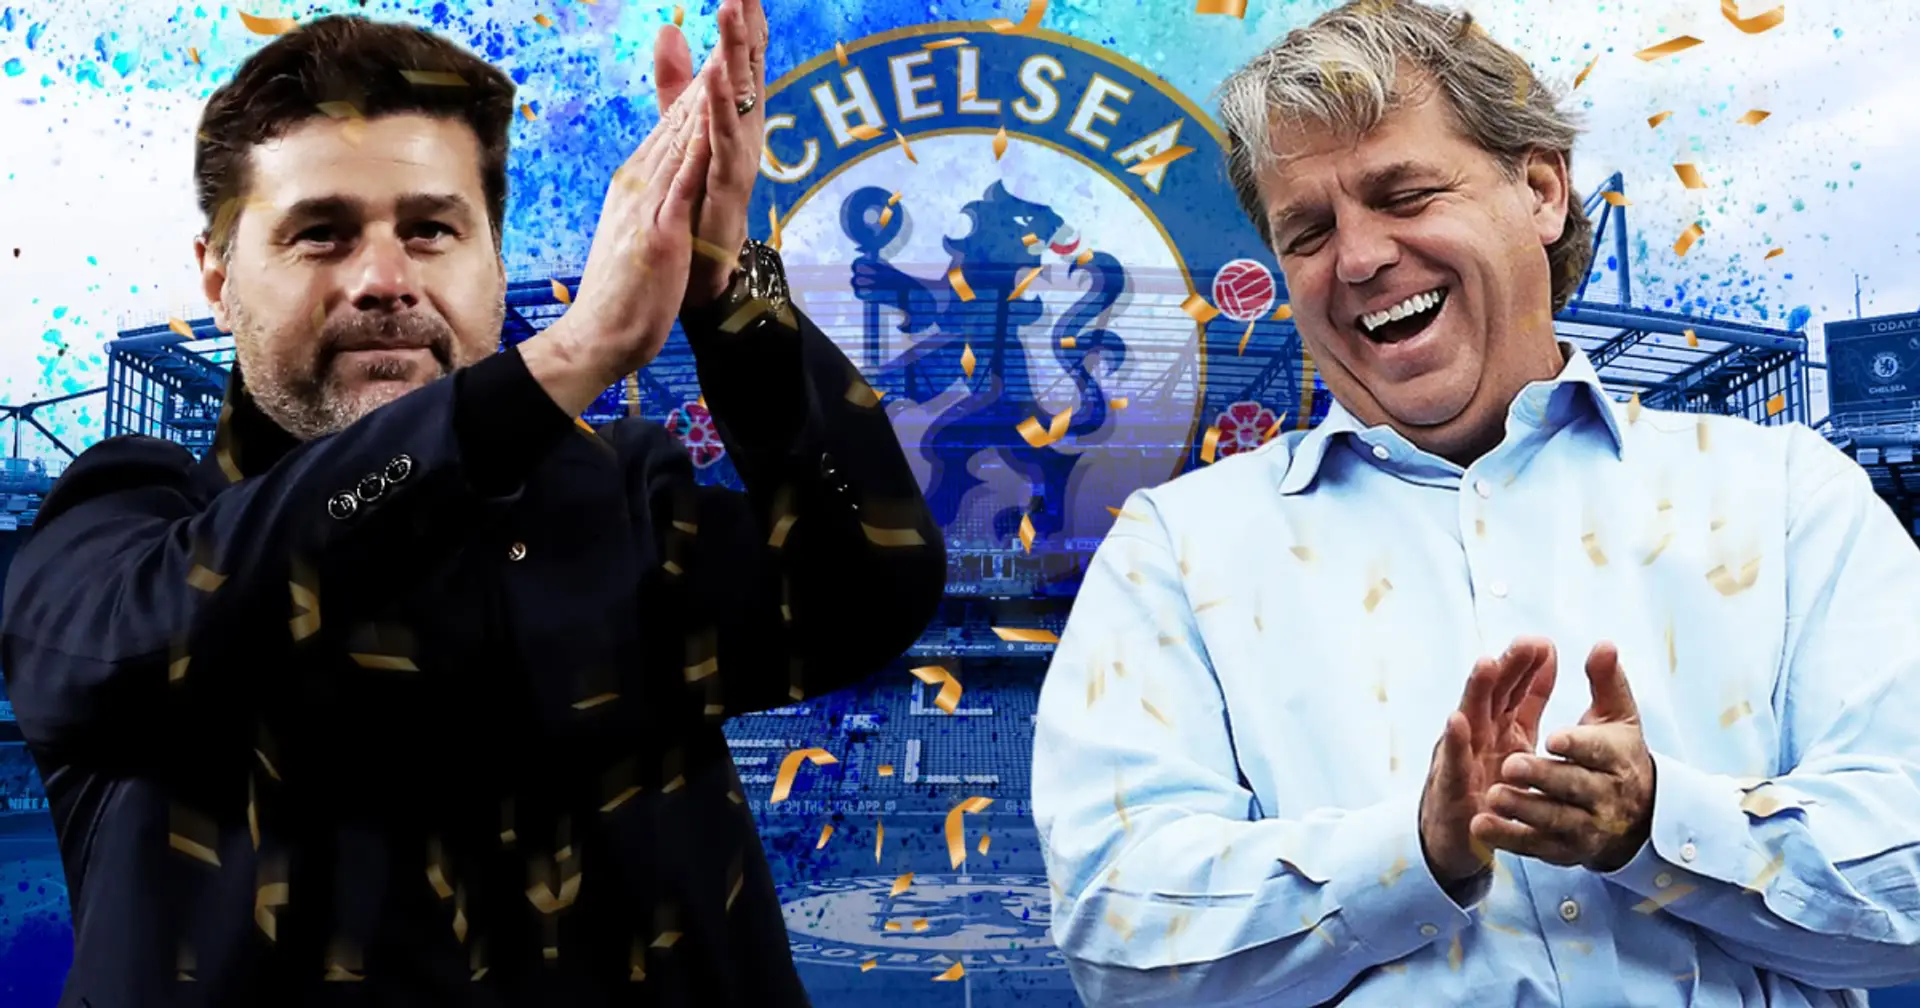 Pochettino ist der neue Trainer des FC Chelsea: Wie kam es zu seiner Wahl? Warum wurde Nagelsmann aus dem Rennen genommen?